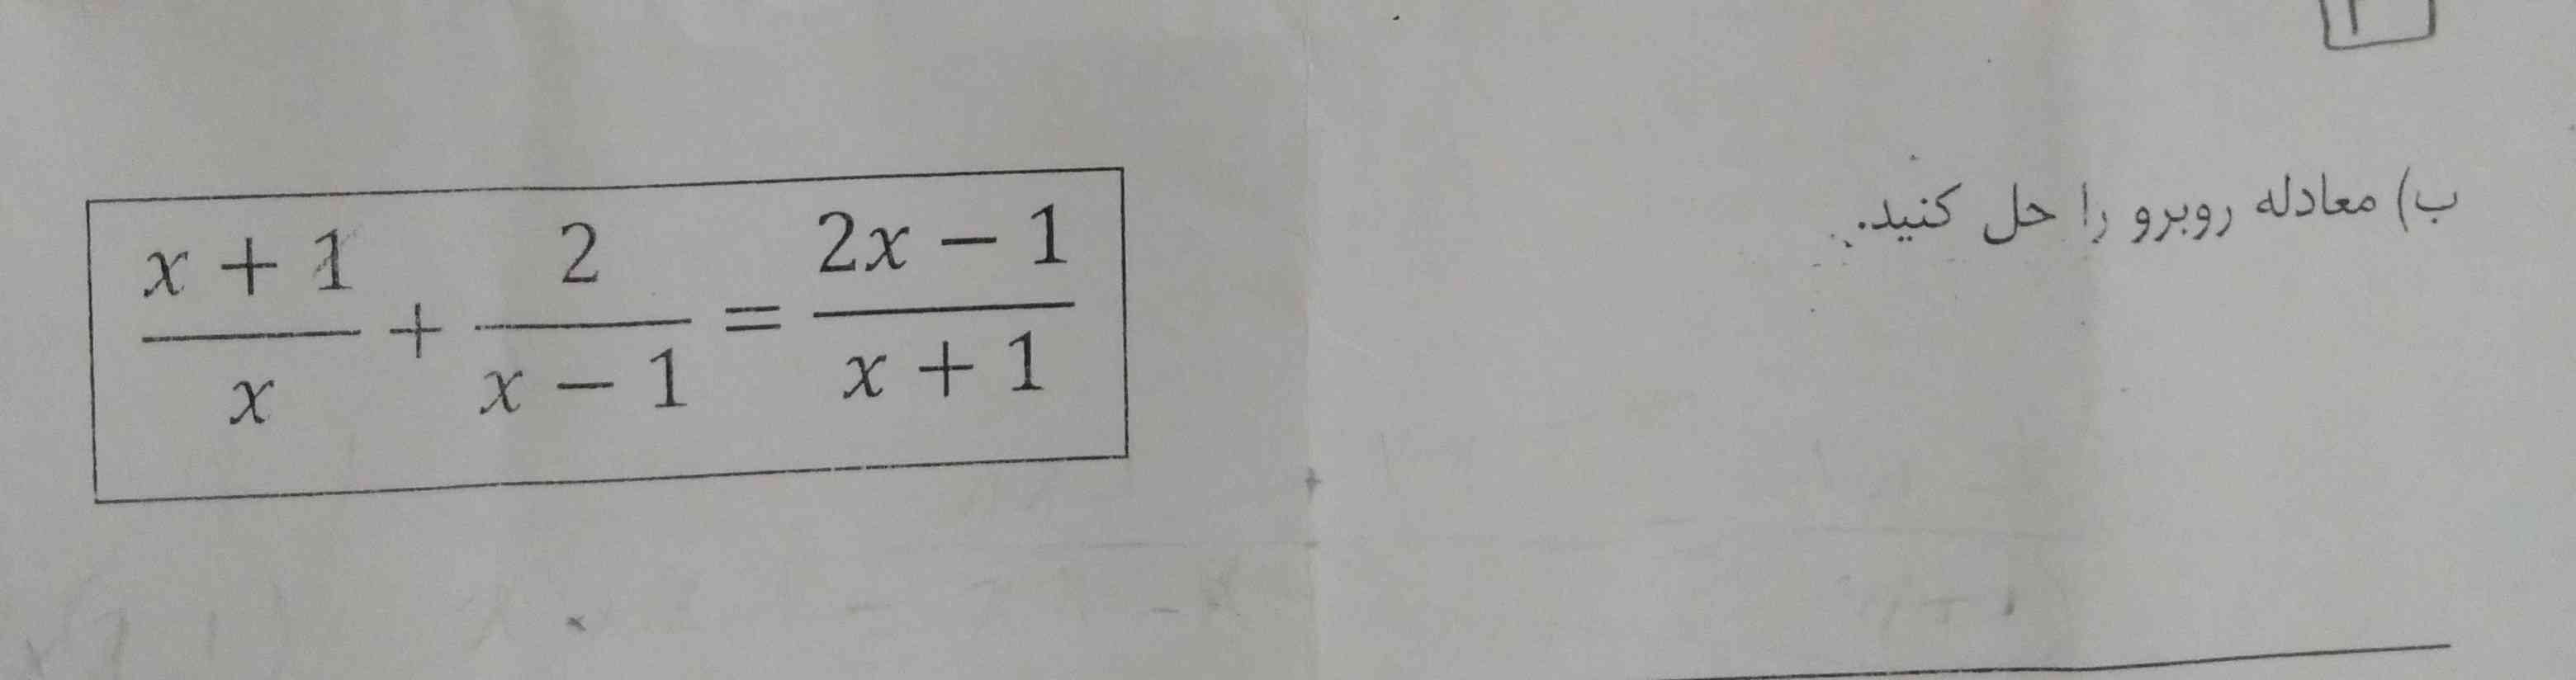 سلام کسی میتونه این معادله رو برام حل کنه با توضیح
معلم مون گفته جوابش صفر میشه 